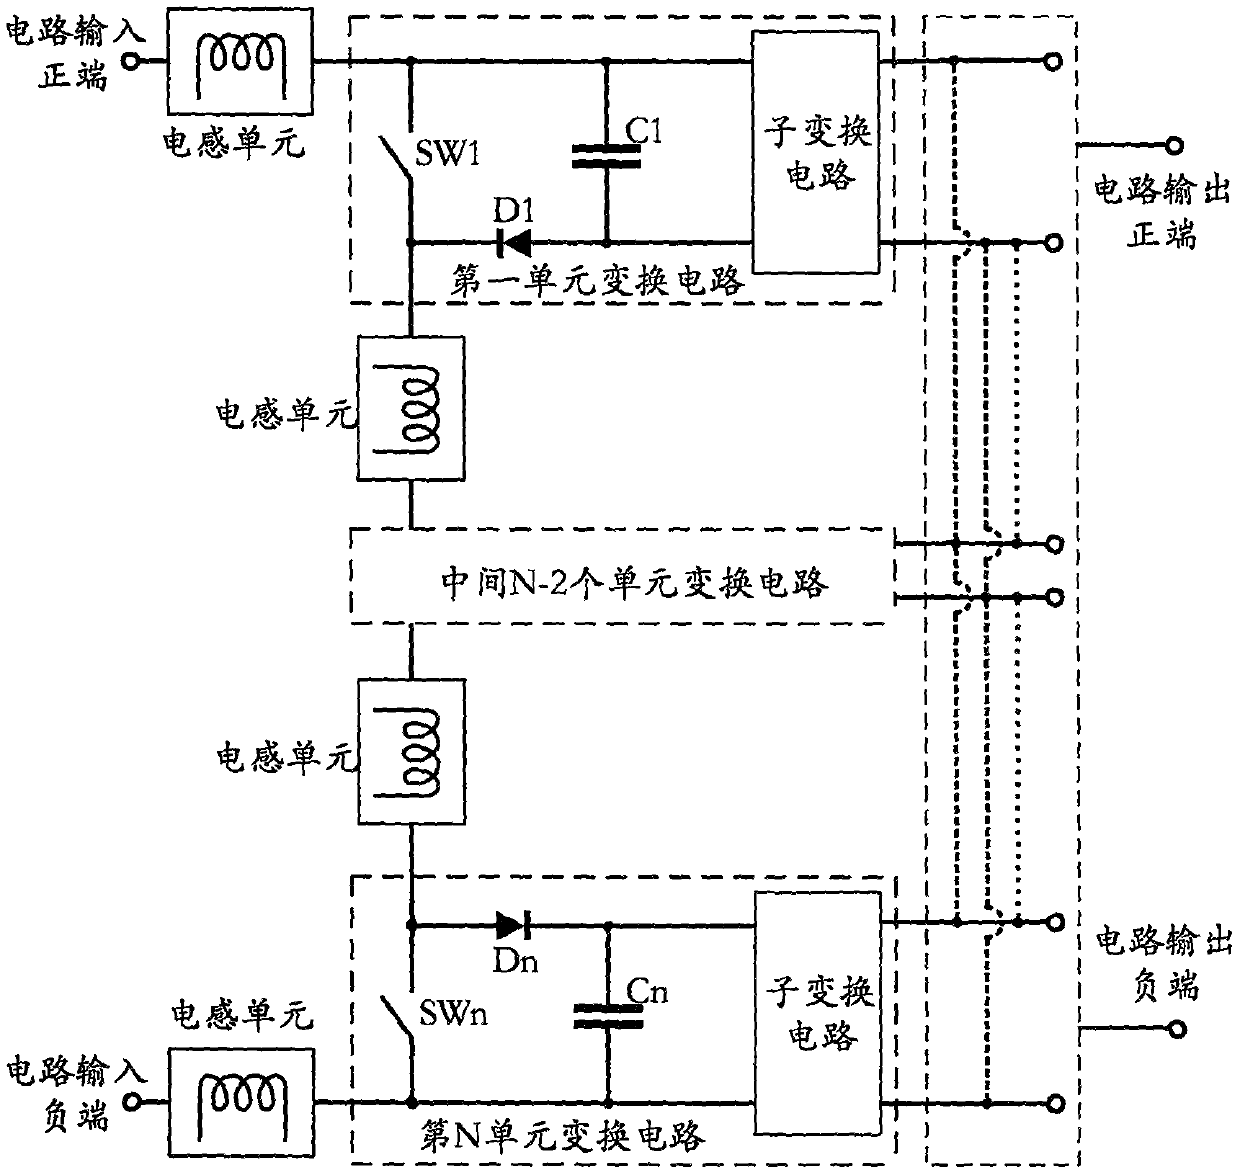 A dc-dc conversion circuit